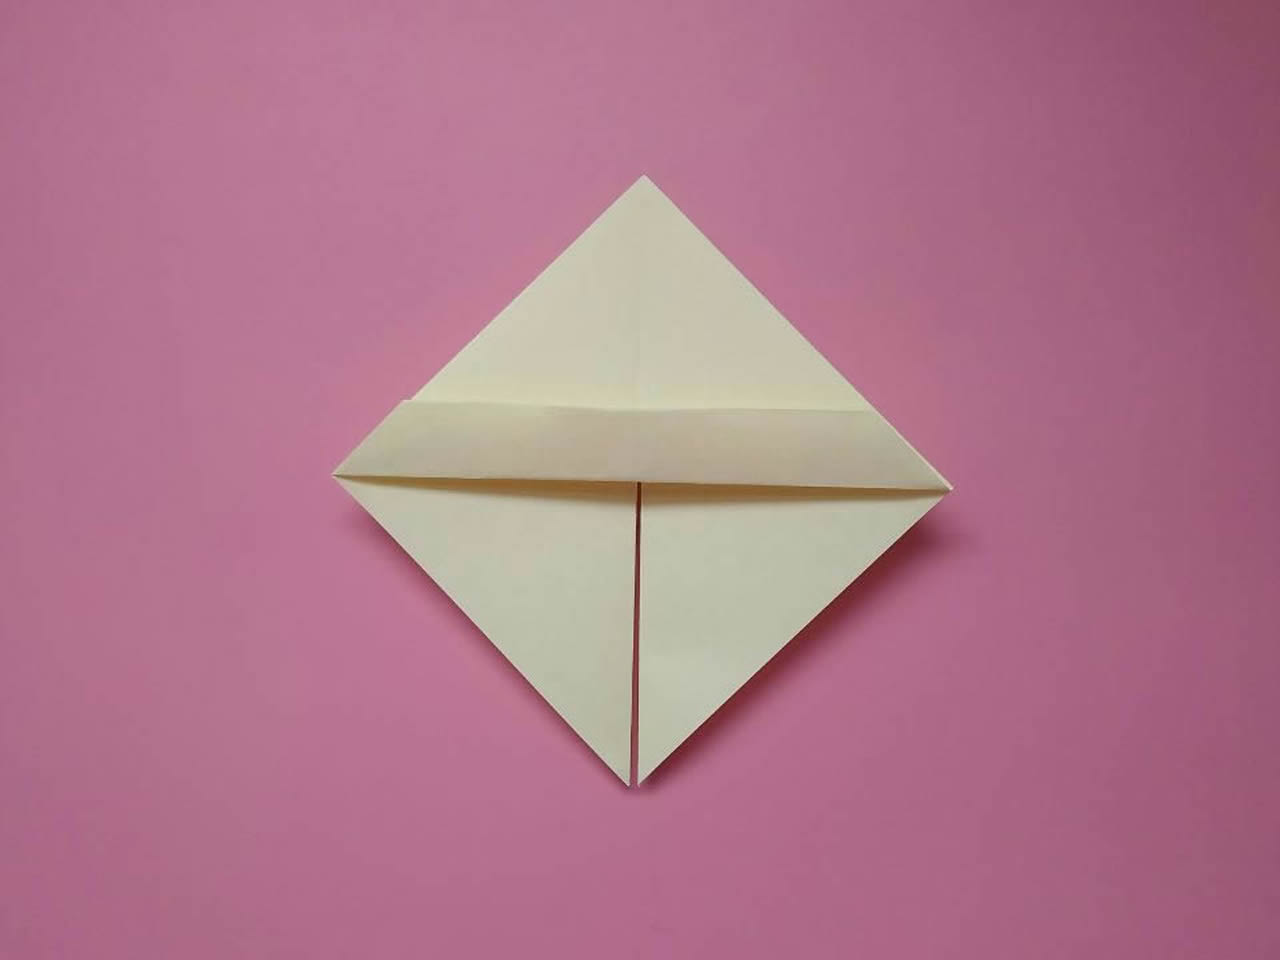 曾经红遍大江南北的折纸玩具“猪上树”，简单易学，还有人记得吗